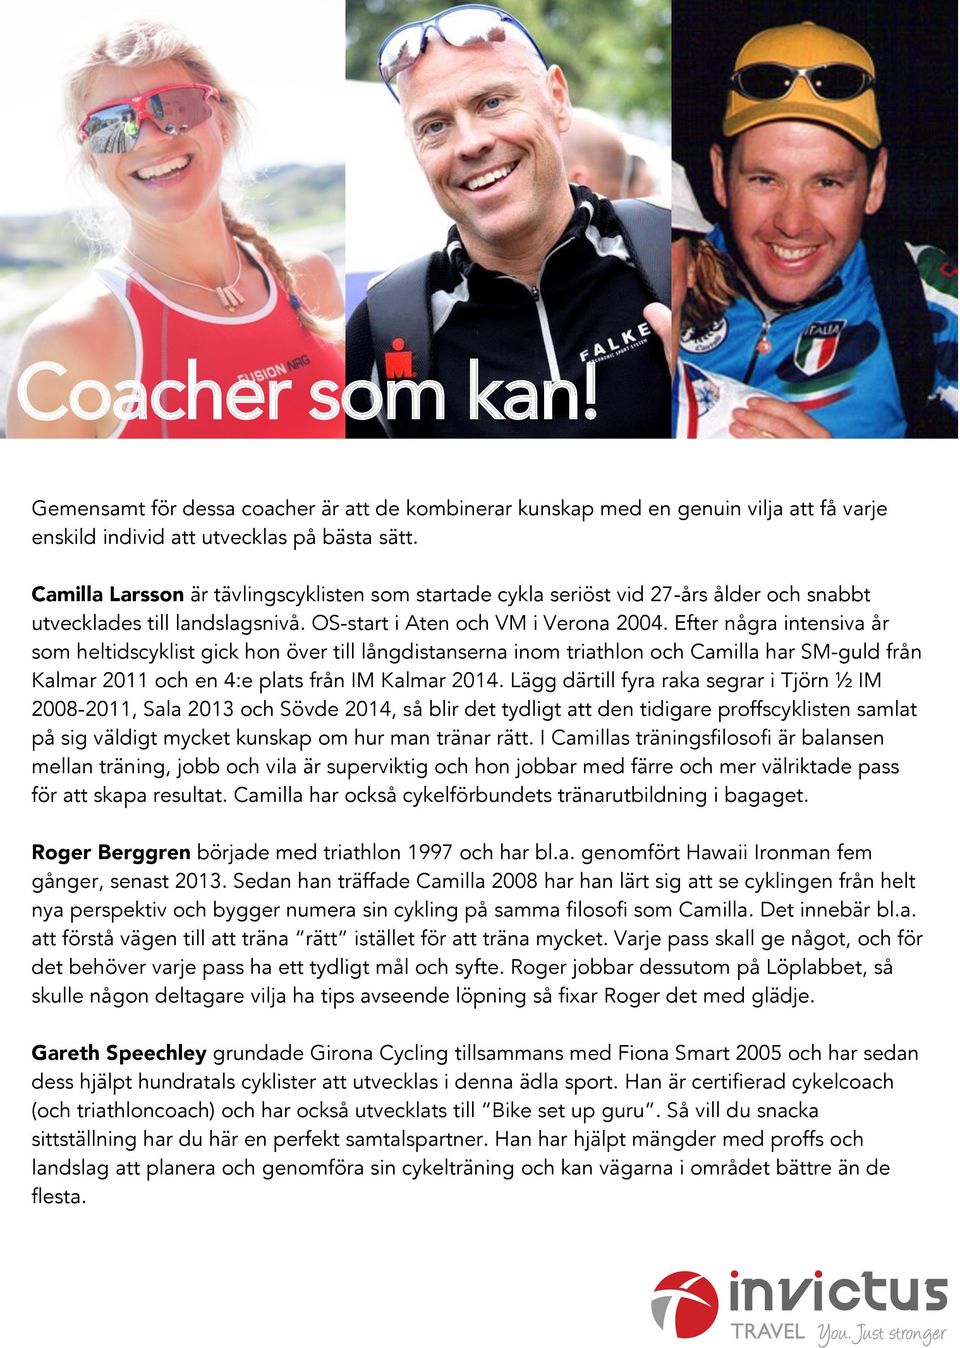 Efter några intensiva år som heltidscyklist gick hon över till långdistanserna inom triathlon och Camilla har SM-guld från Kalmar 2011 och en 4:e plats från IM Kalmar 2014.